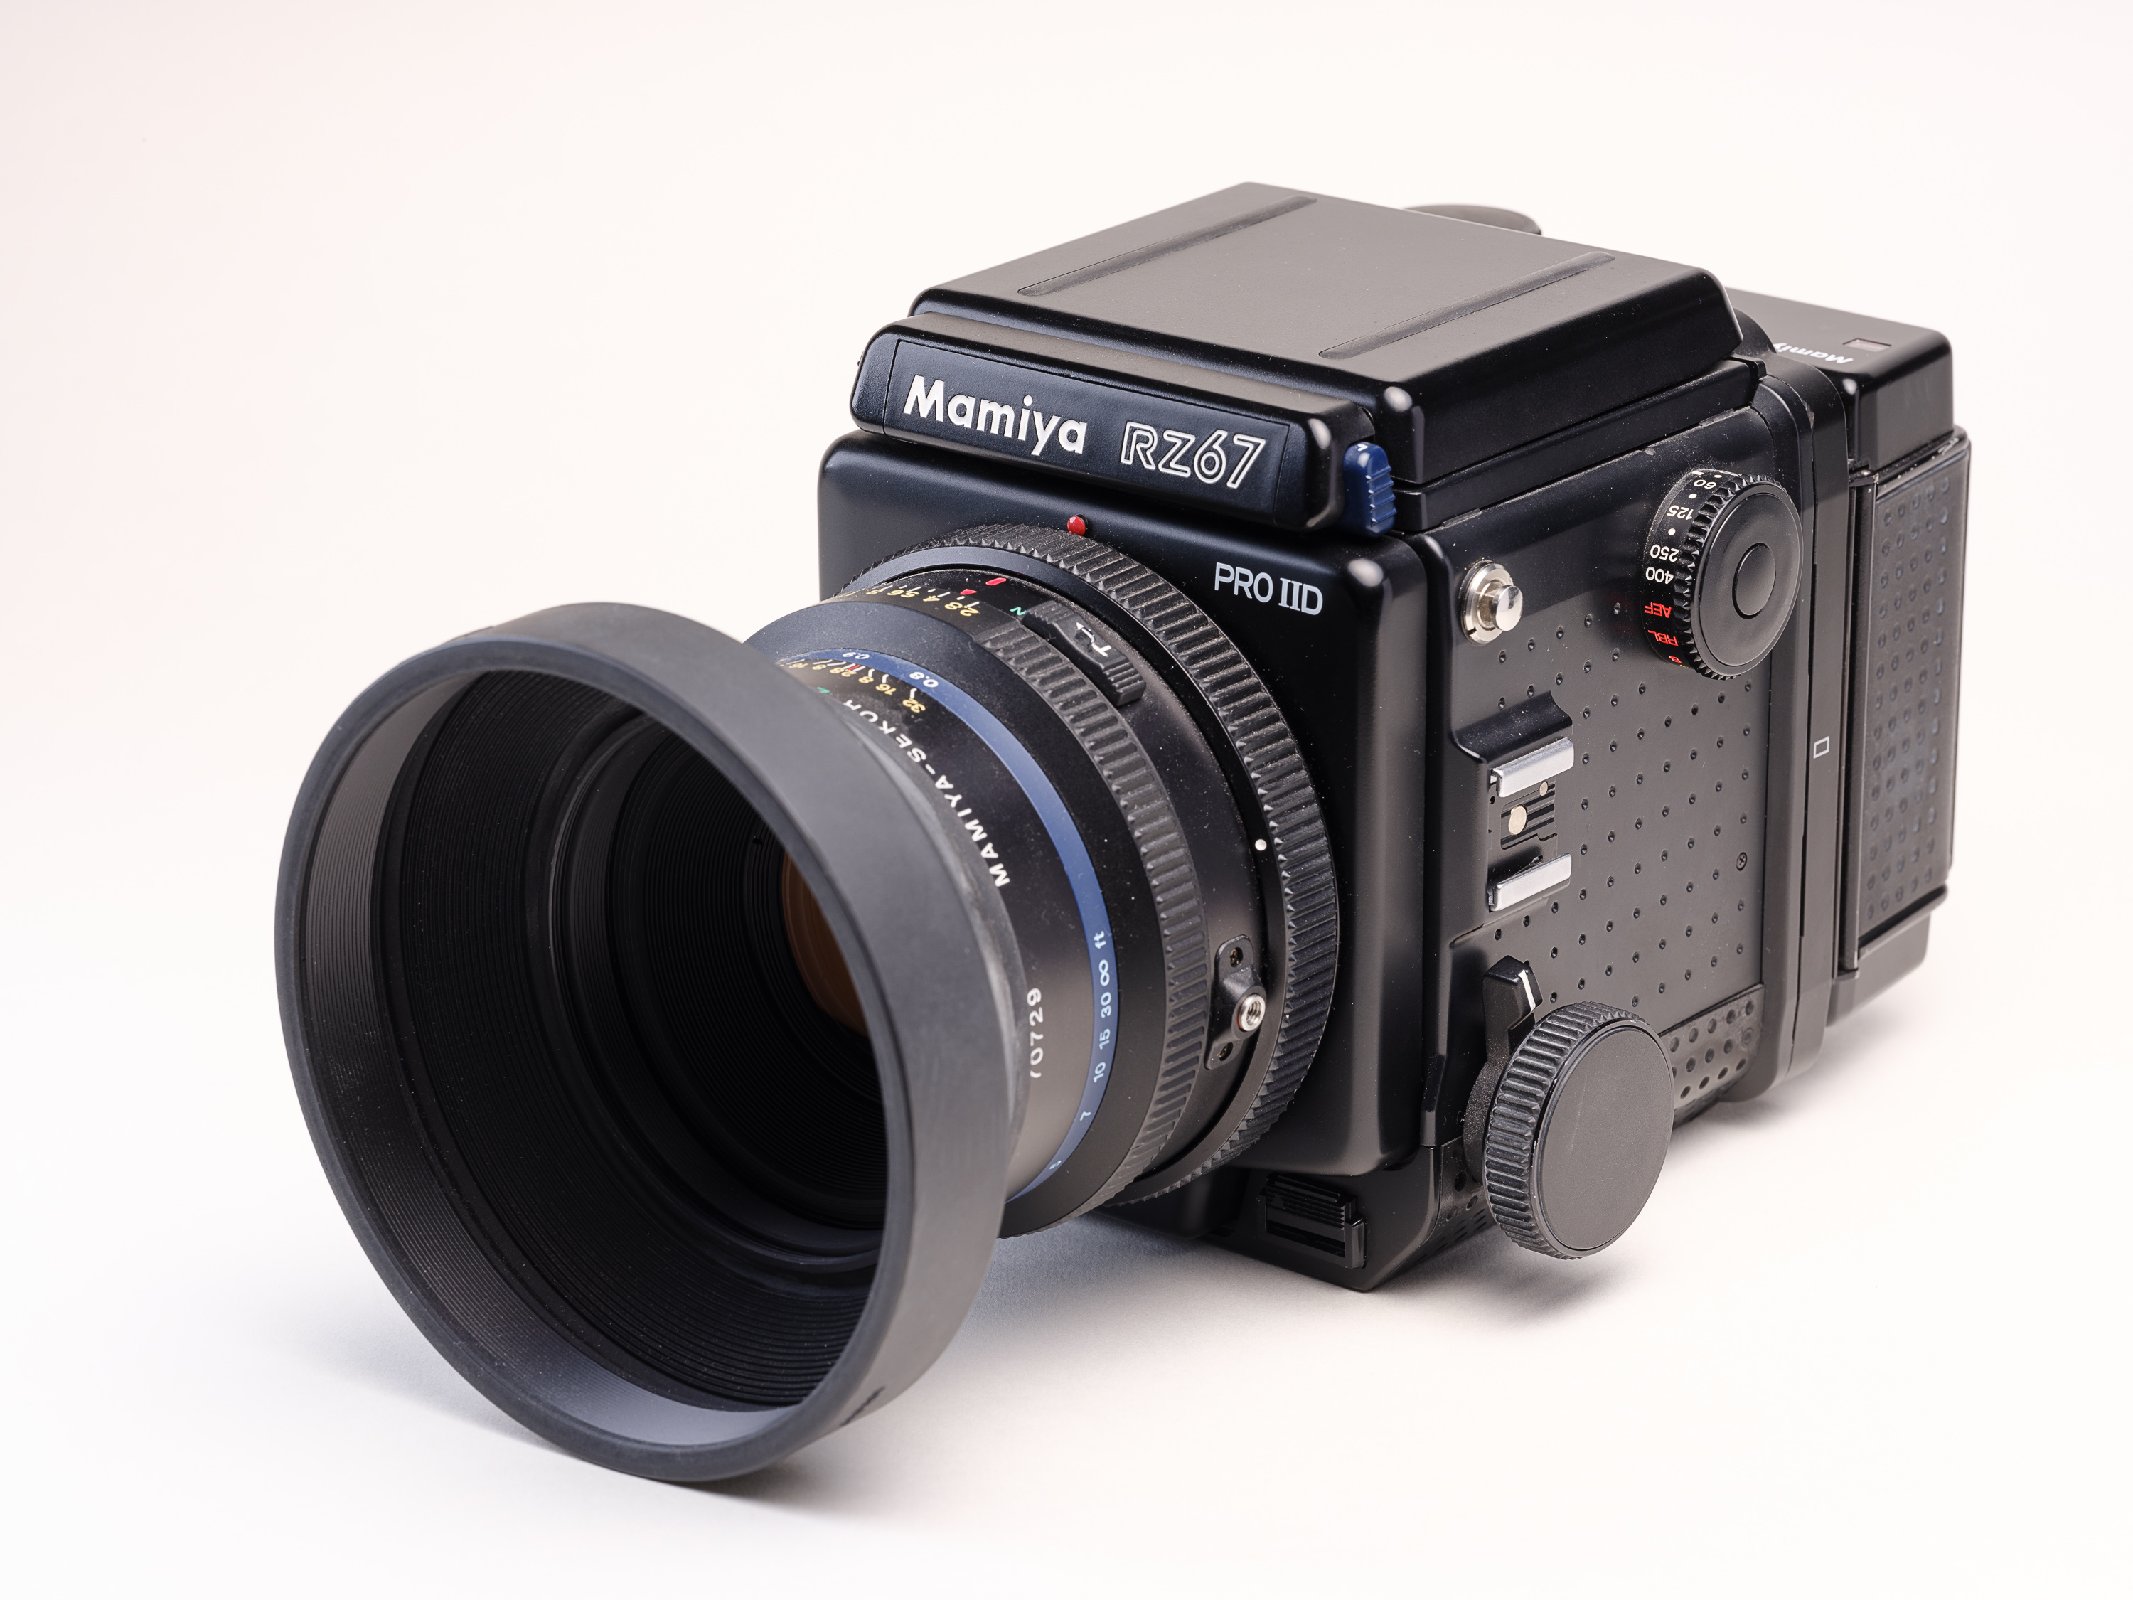 Mamiya Kamera RZ67 Pro II D 110mm f2,8 Sekor, 6 x 7 rückteil, 2x